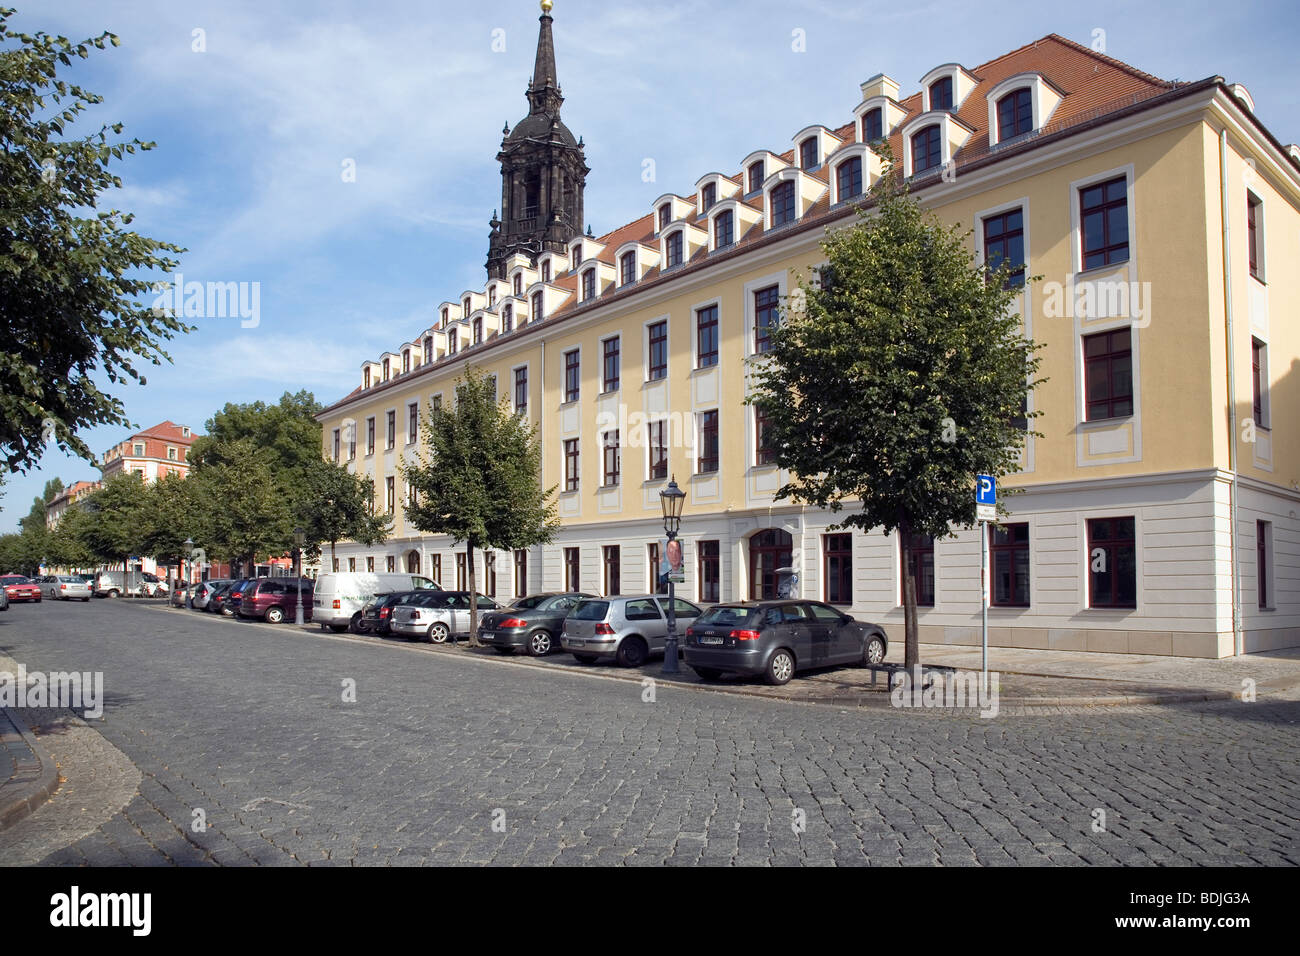 Koenigstrasse, Neustadt - Baroque housing, Dresden, Saxony, Germany Stock Photo